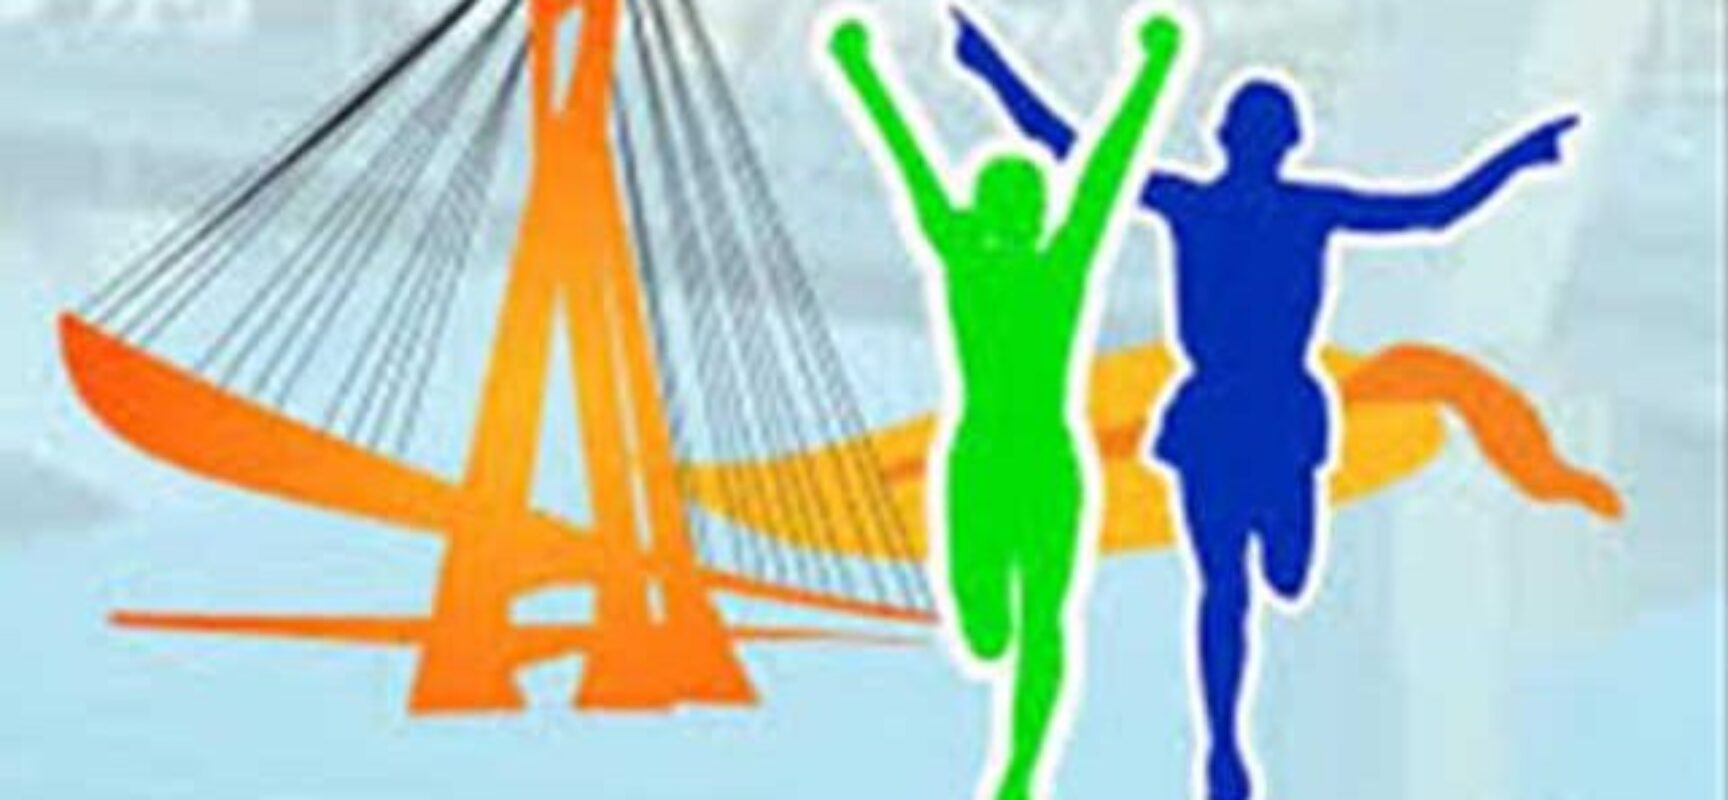 Corrida da Ponte: kits começam a ser entregues nesta sexta-feira (15); confira local e horários